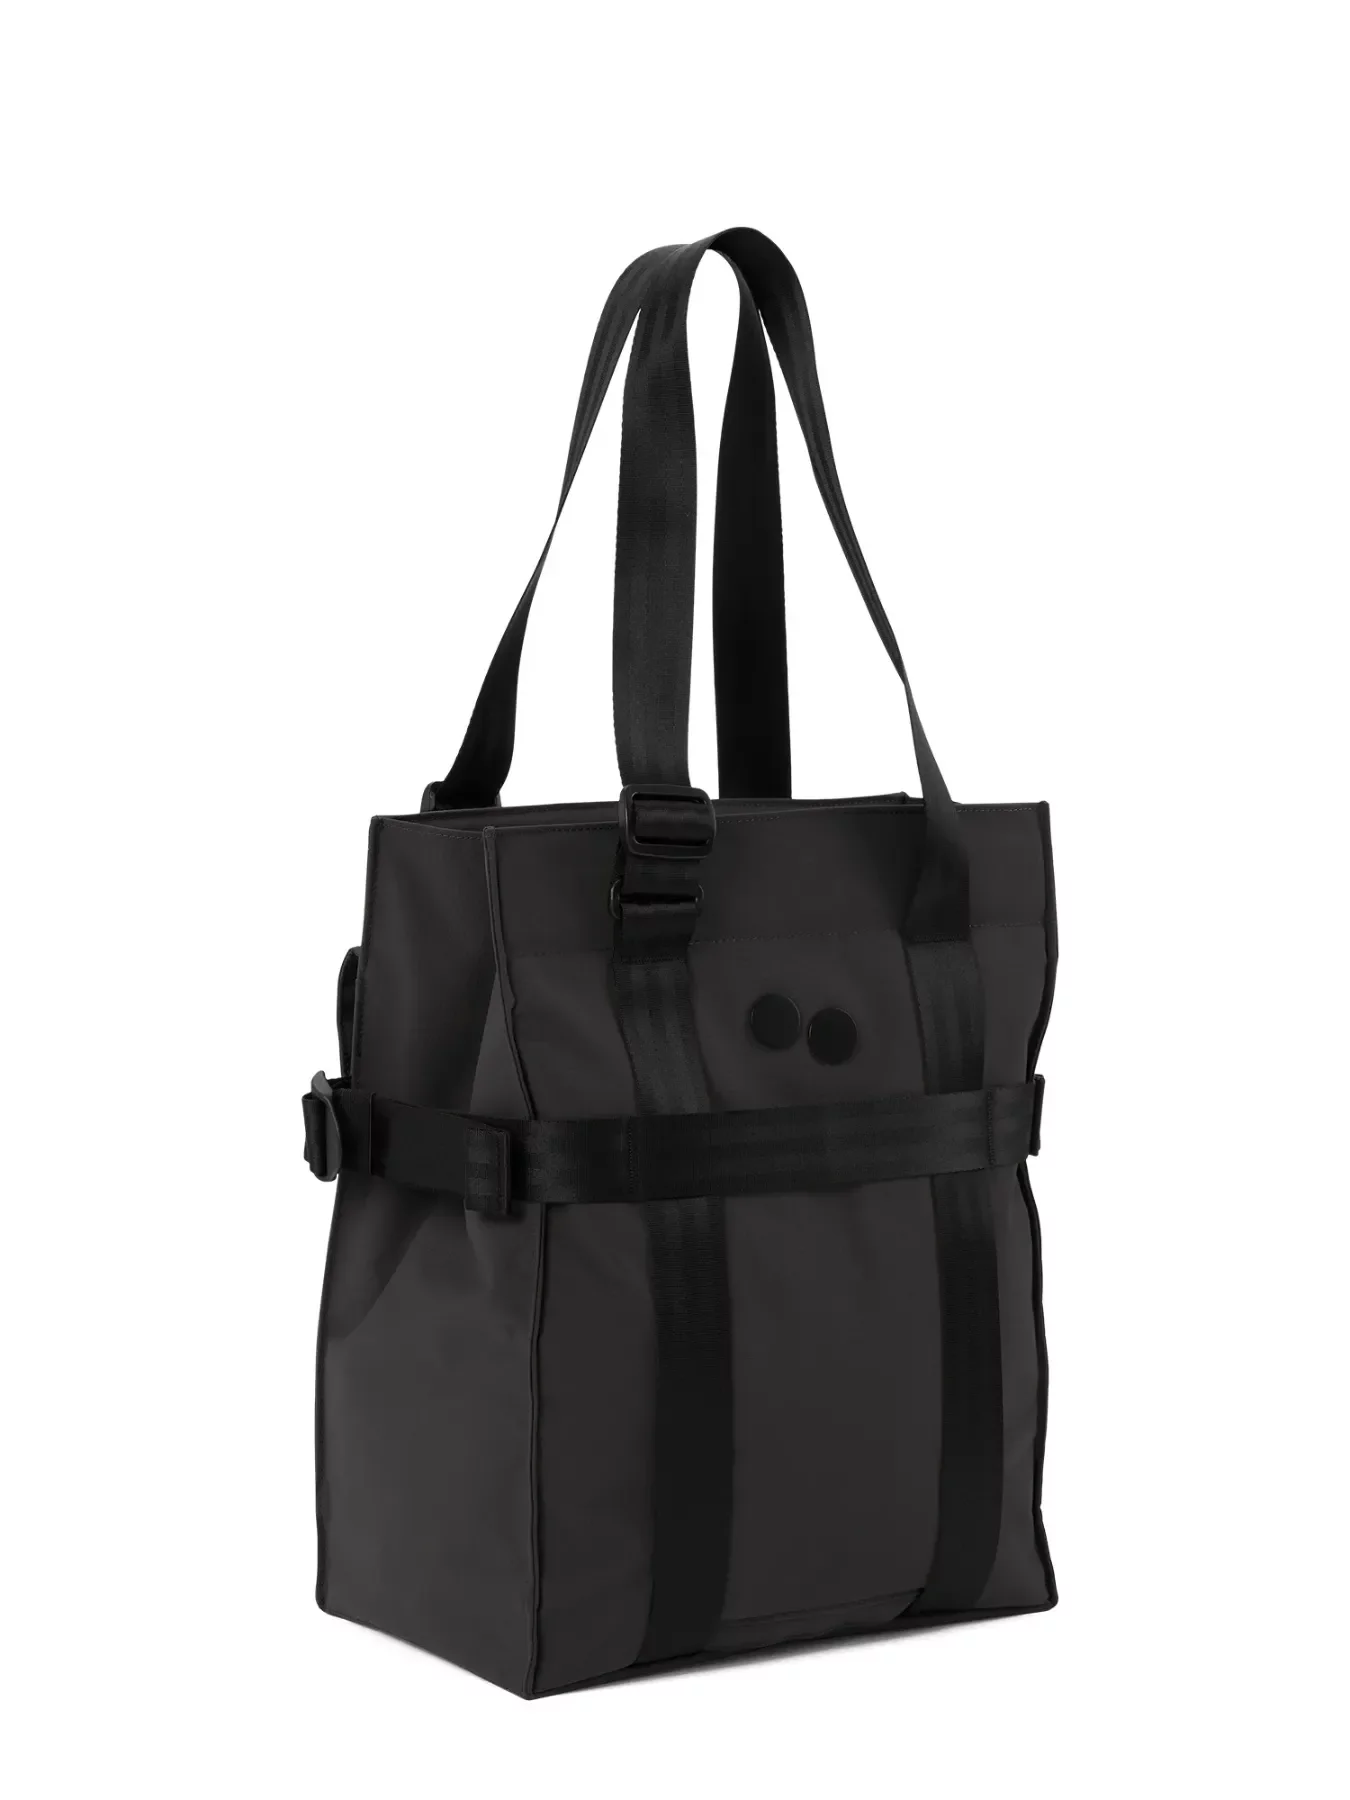 pinqponq Backpack PENDIK TB - Solid Black 2